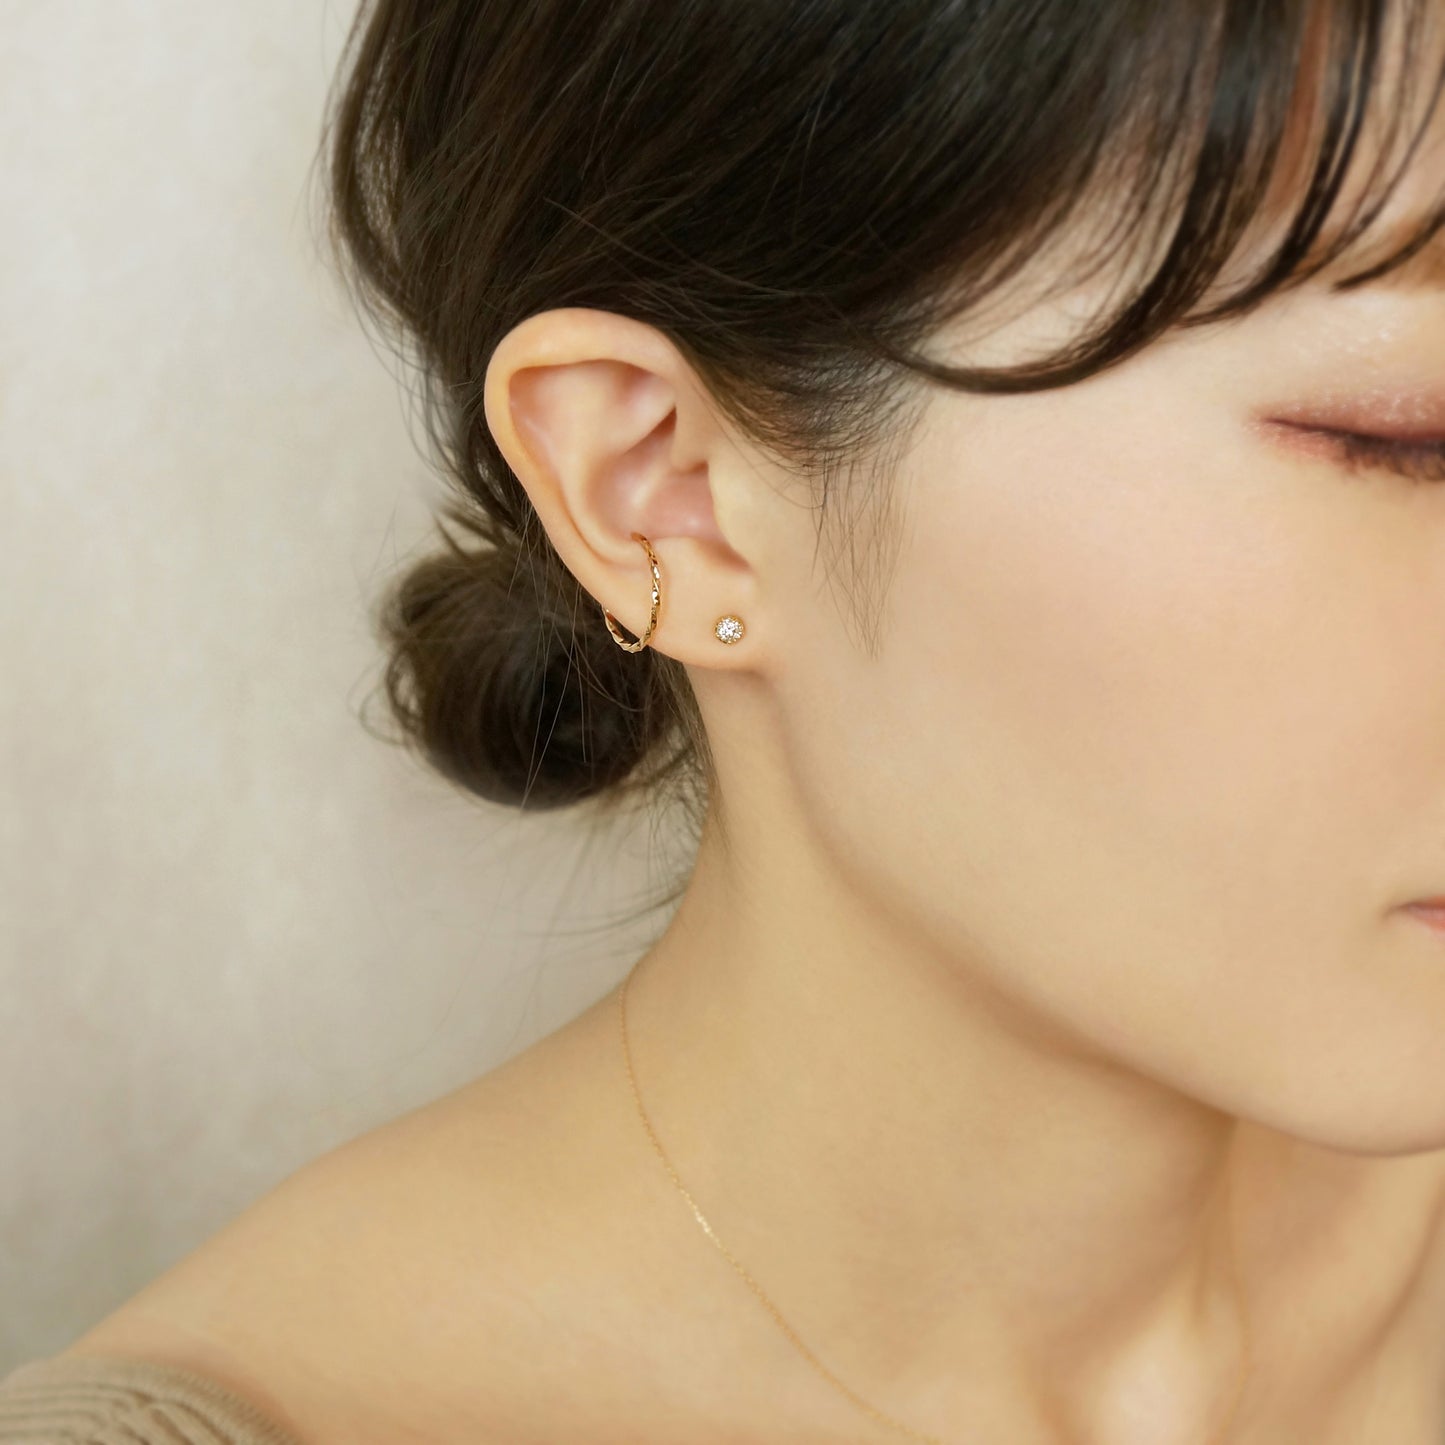 [Second Earrings] 18K Yellow Gold Diamond Earrings 0. 26ct - Model Image